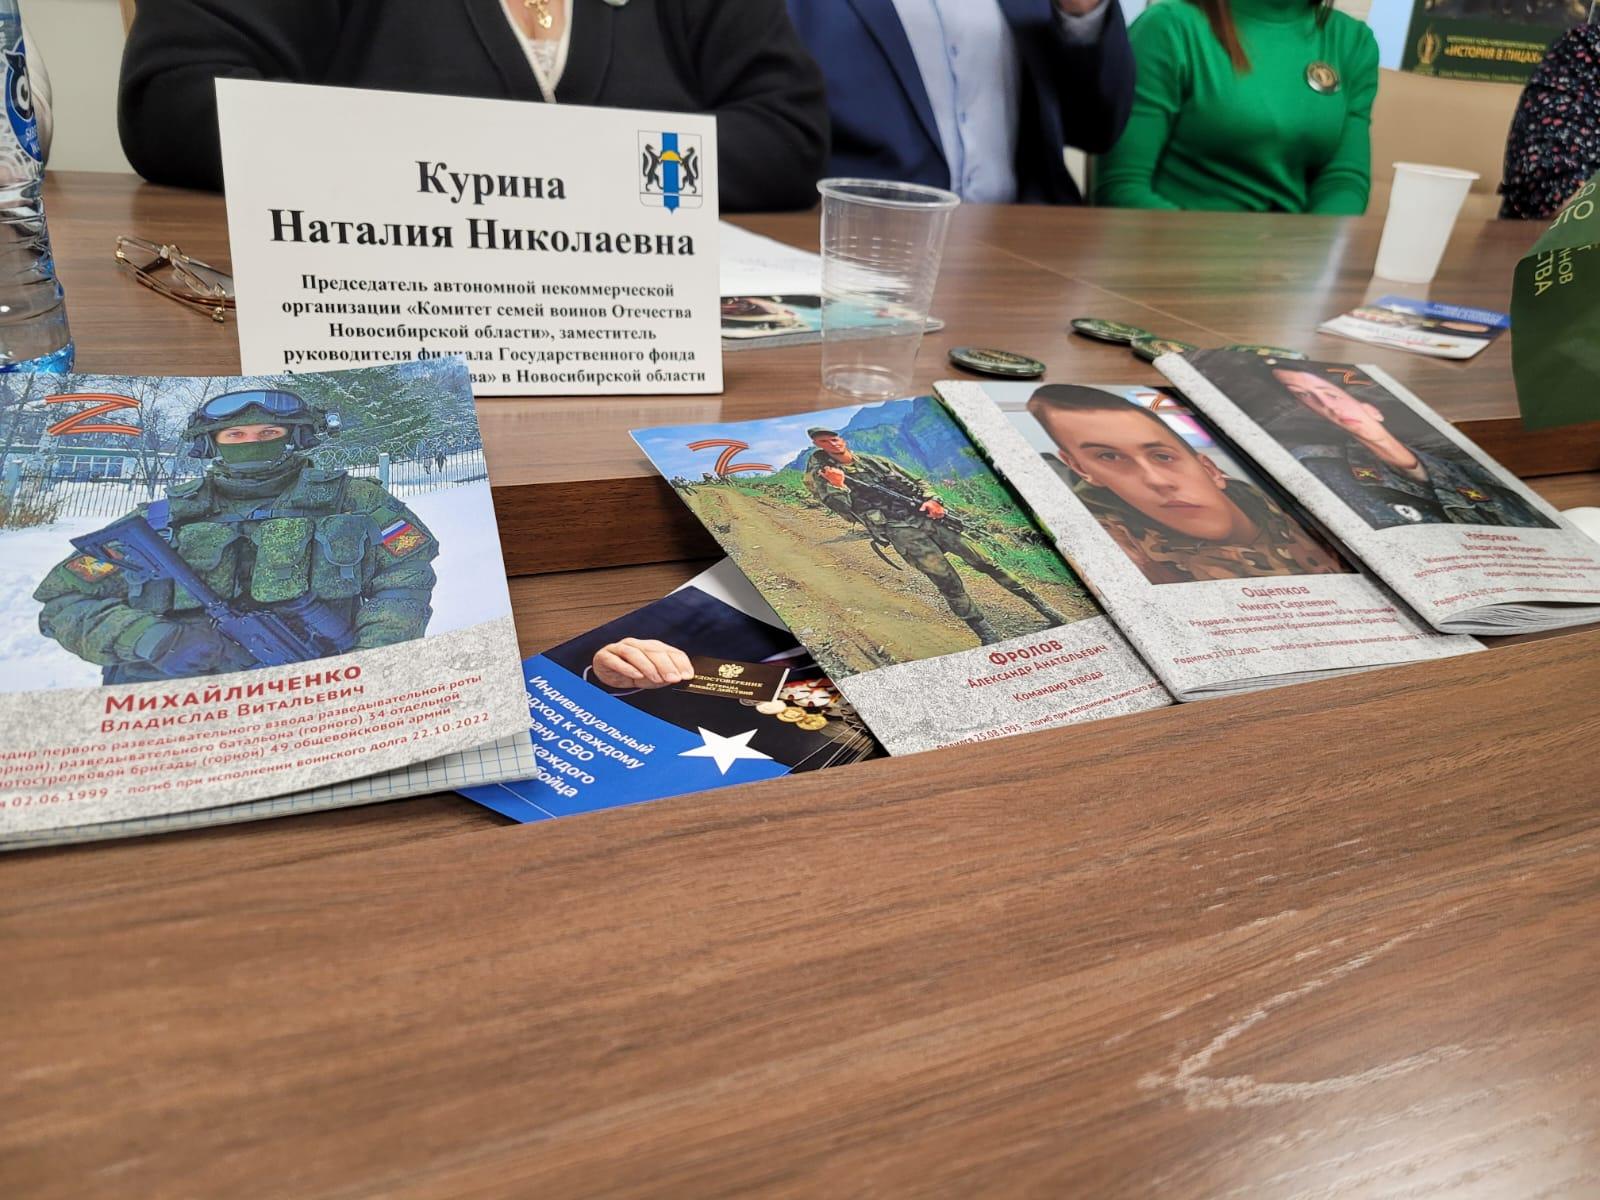 Фото «Помогает пример Костомарова»: как Комитет семей воинов Отечества поддерживает участников СВО из Новосибирска 4